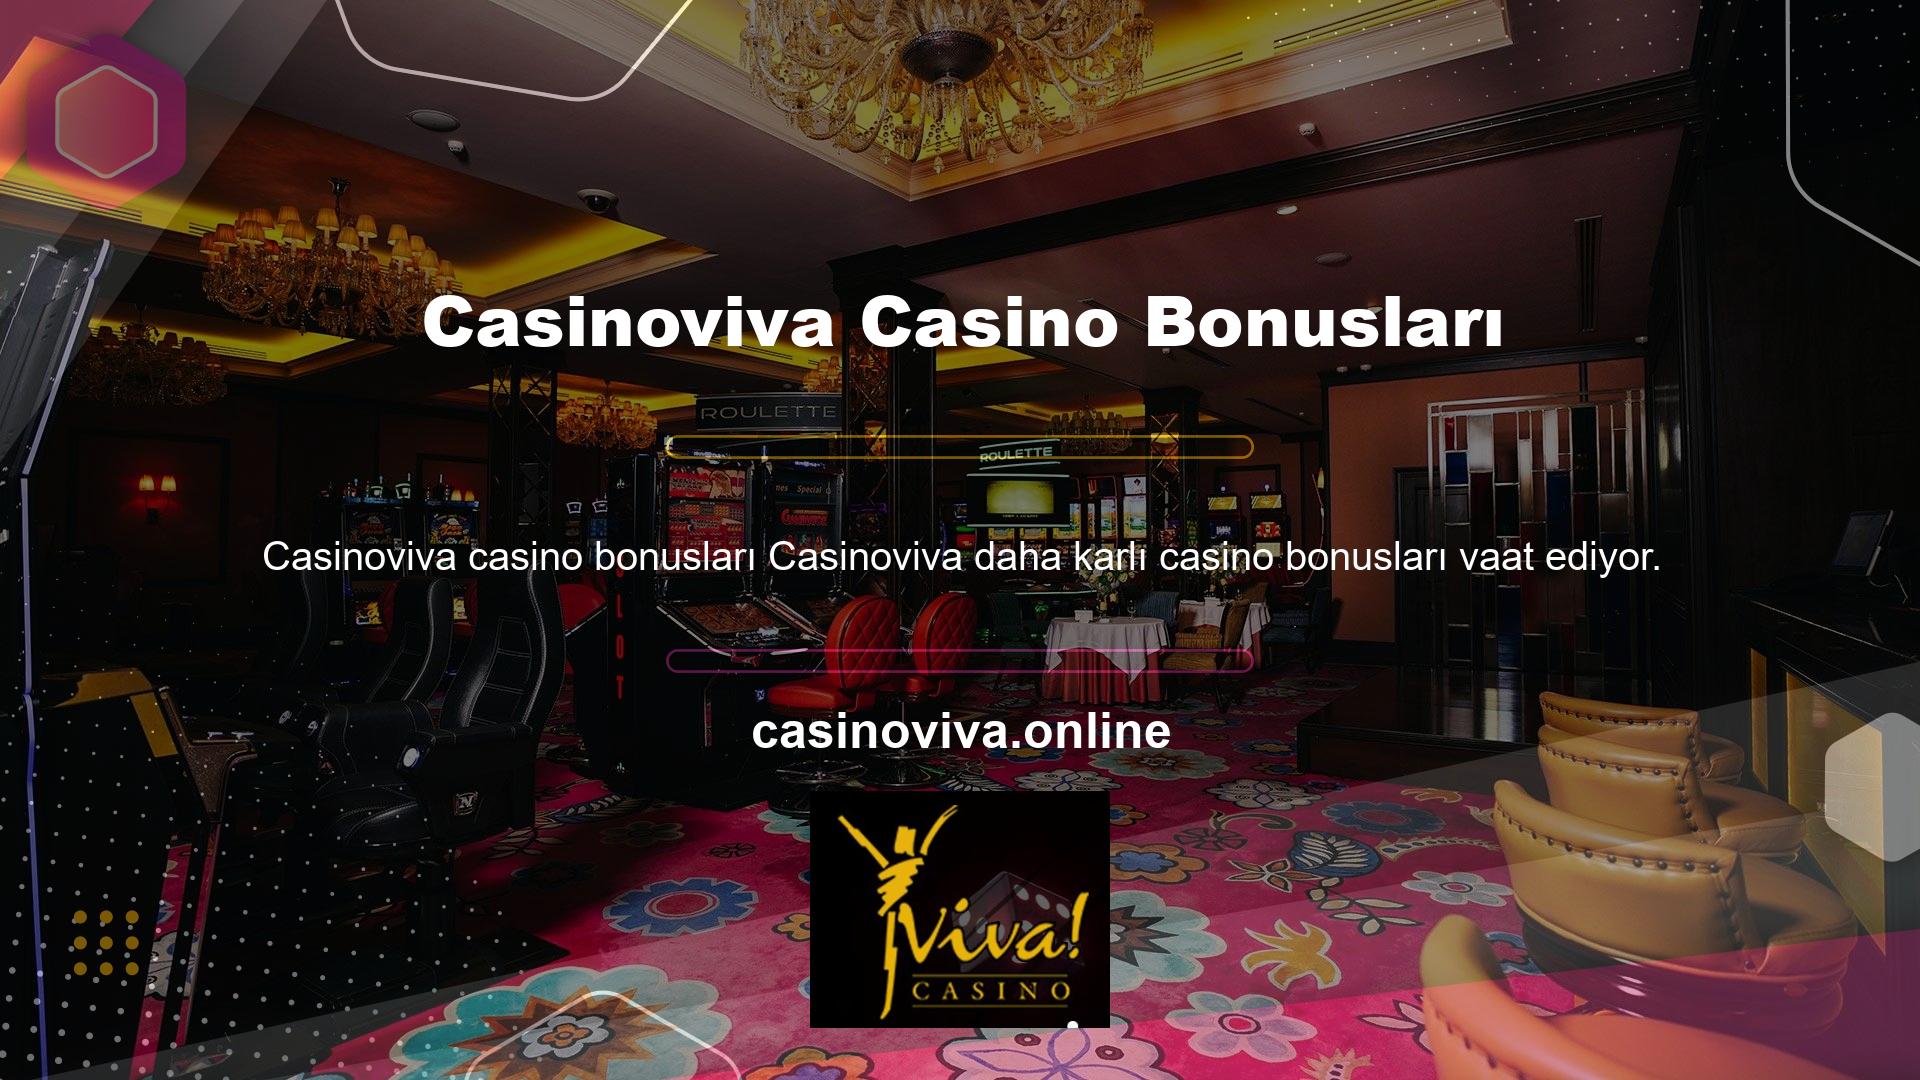 Online casino siteleri geniş bir yelpazede casino promosyonları sunmaktadır